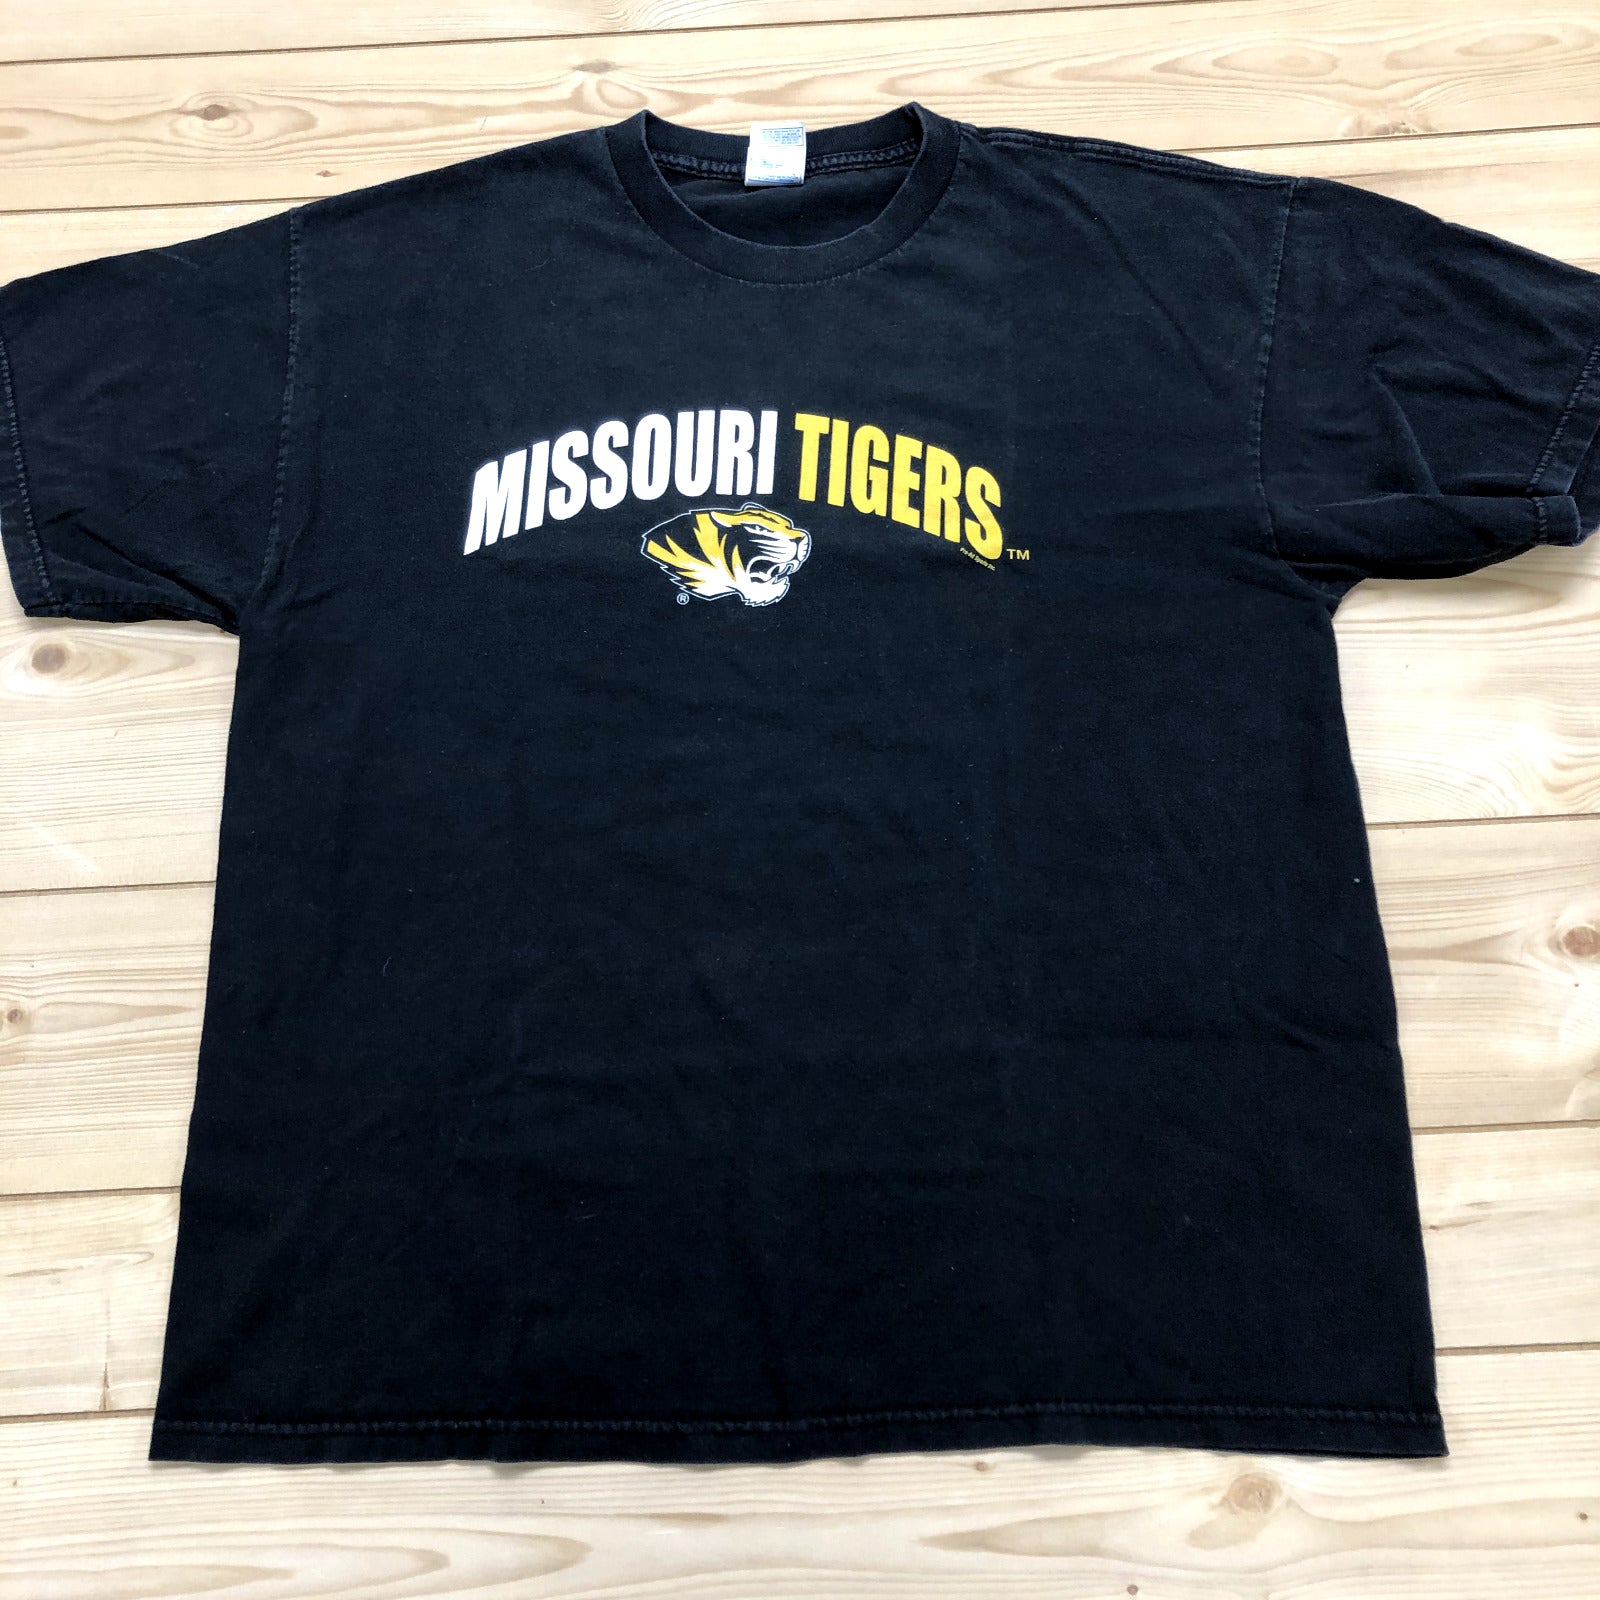 Tennessee River Black Missouri Tigers Regular Fit Cotton T-shirt Adult Size XL